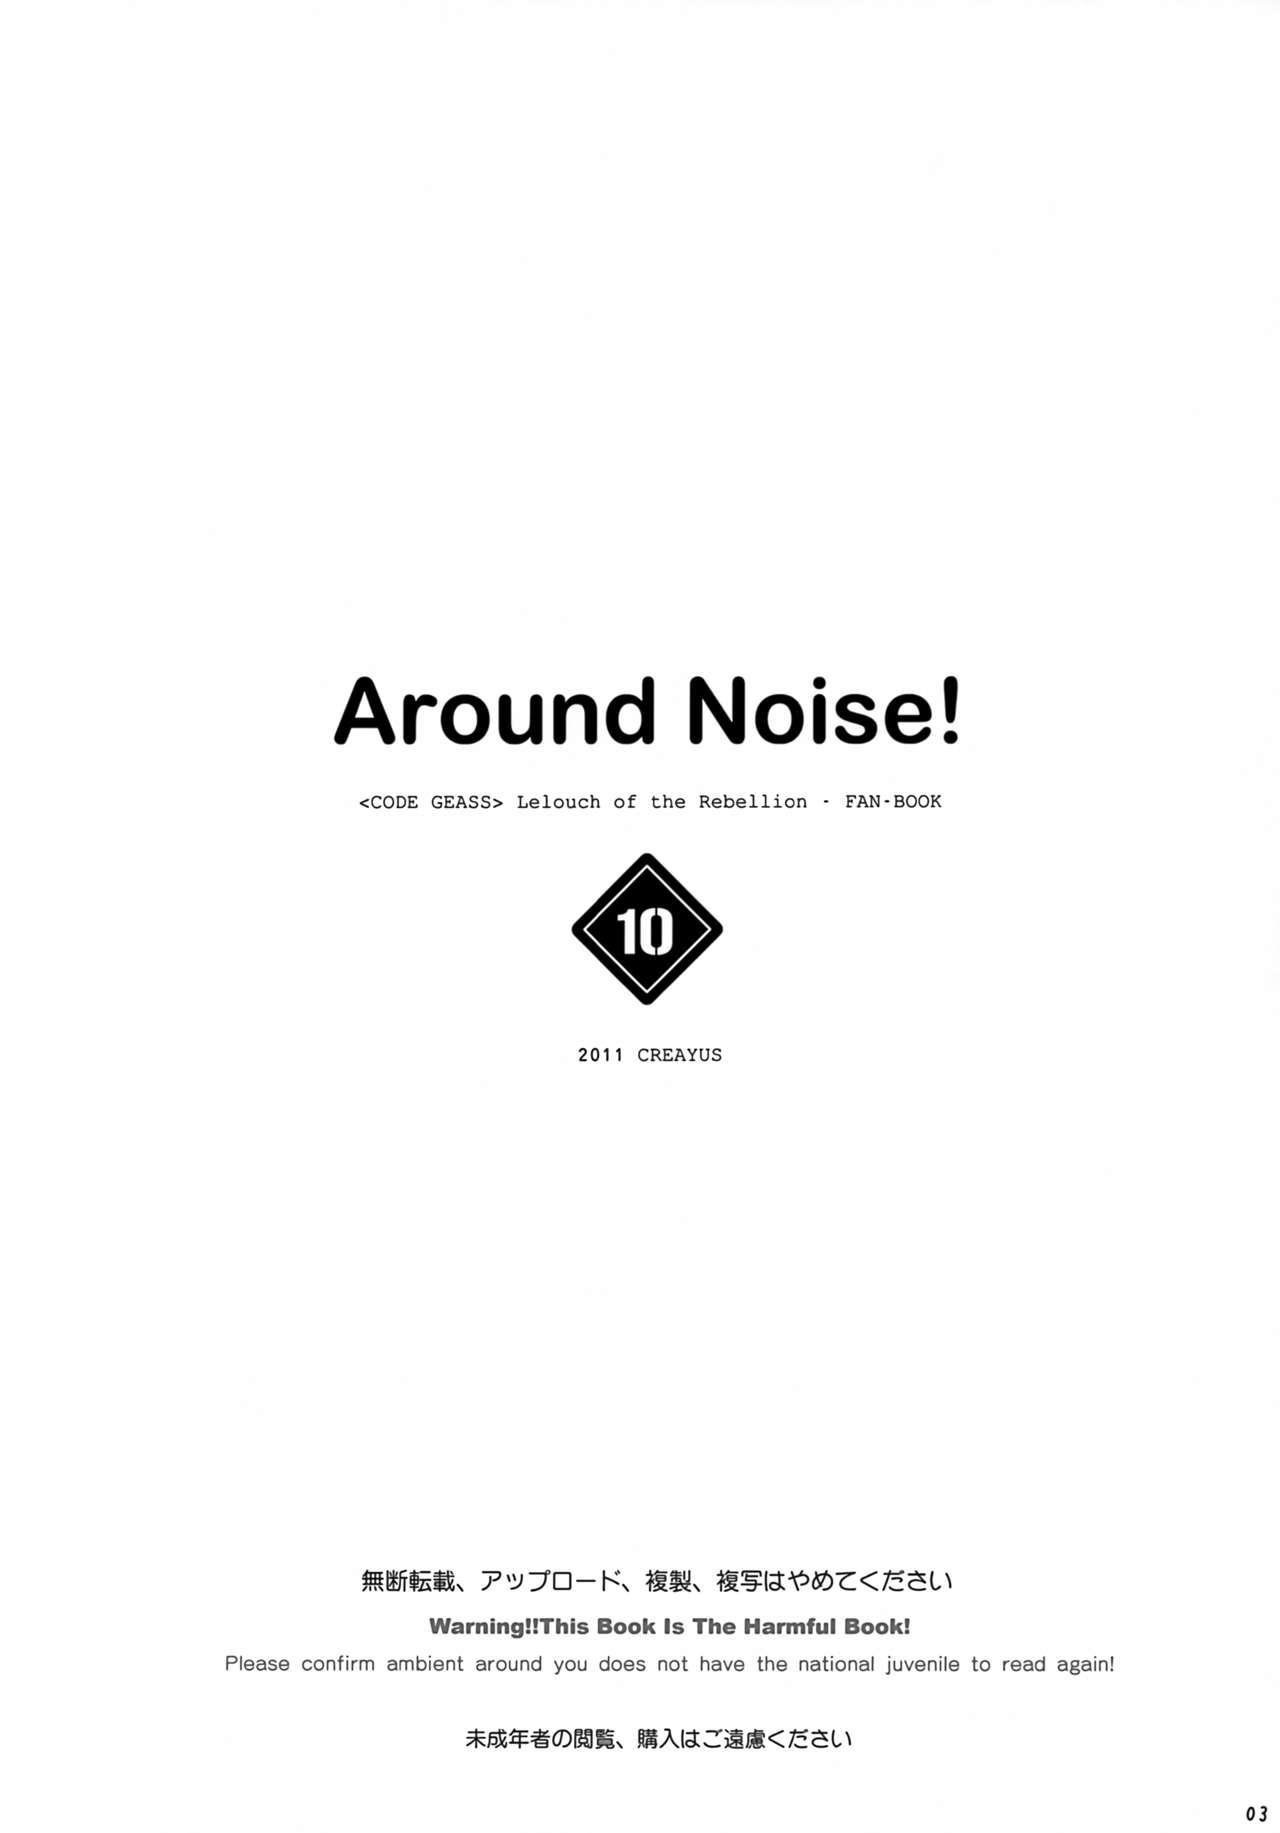 AROUND NOISE! 3